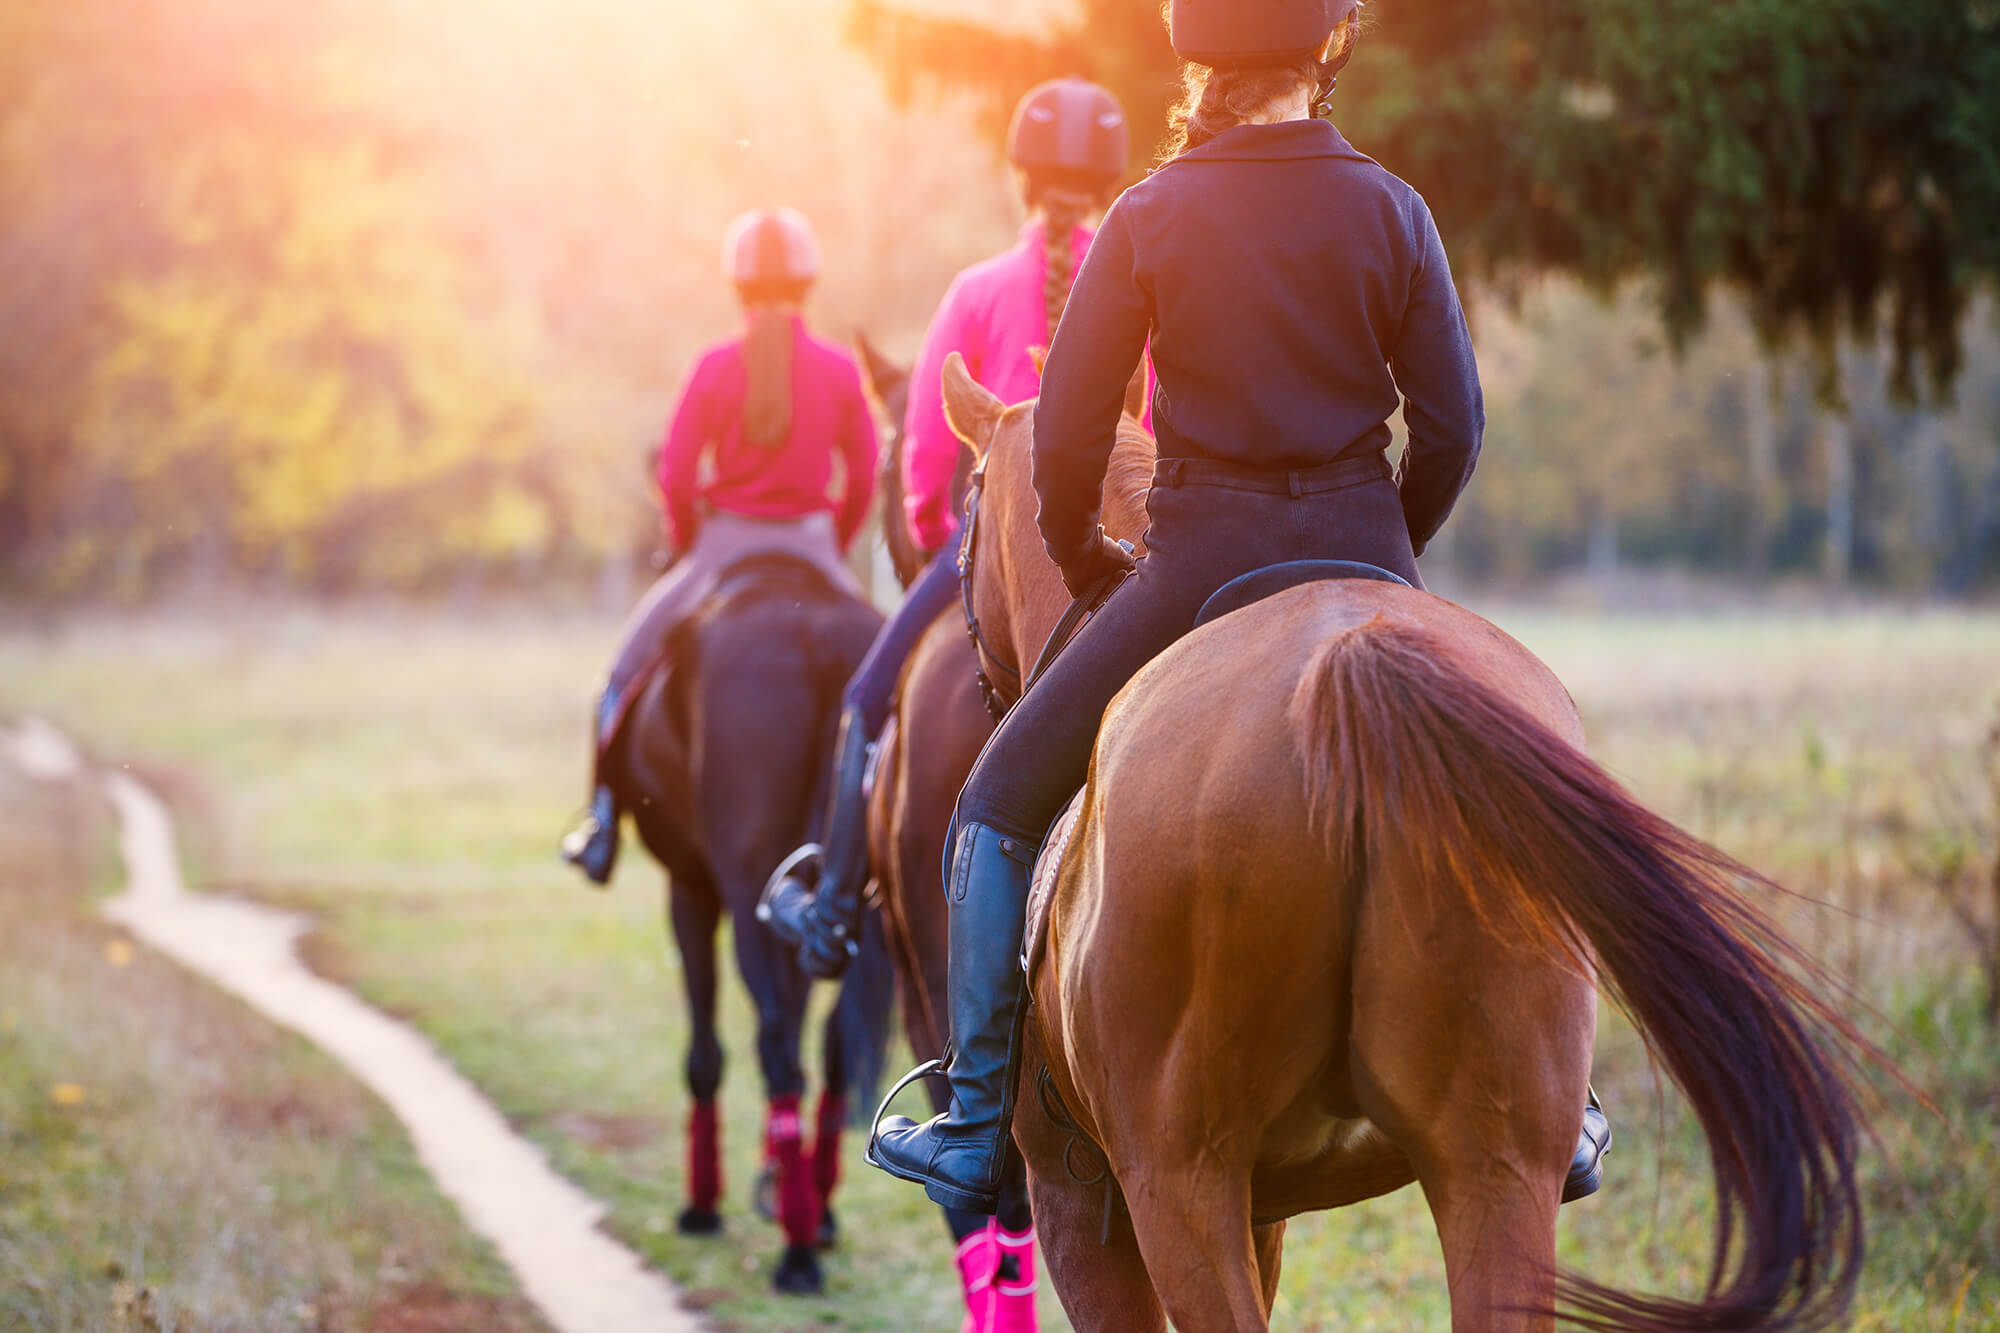 Zwei Reiterinnen in Reitbekleidung und Helmen reiten Pferde entlang eines sonnigen Waldweges, eingefangen in einer warmen Abendlichtstimmung.